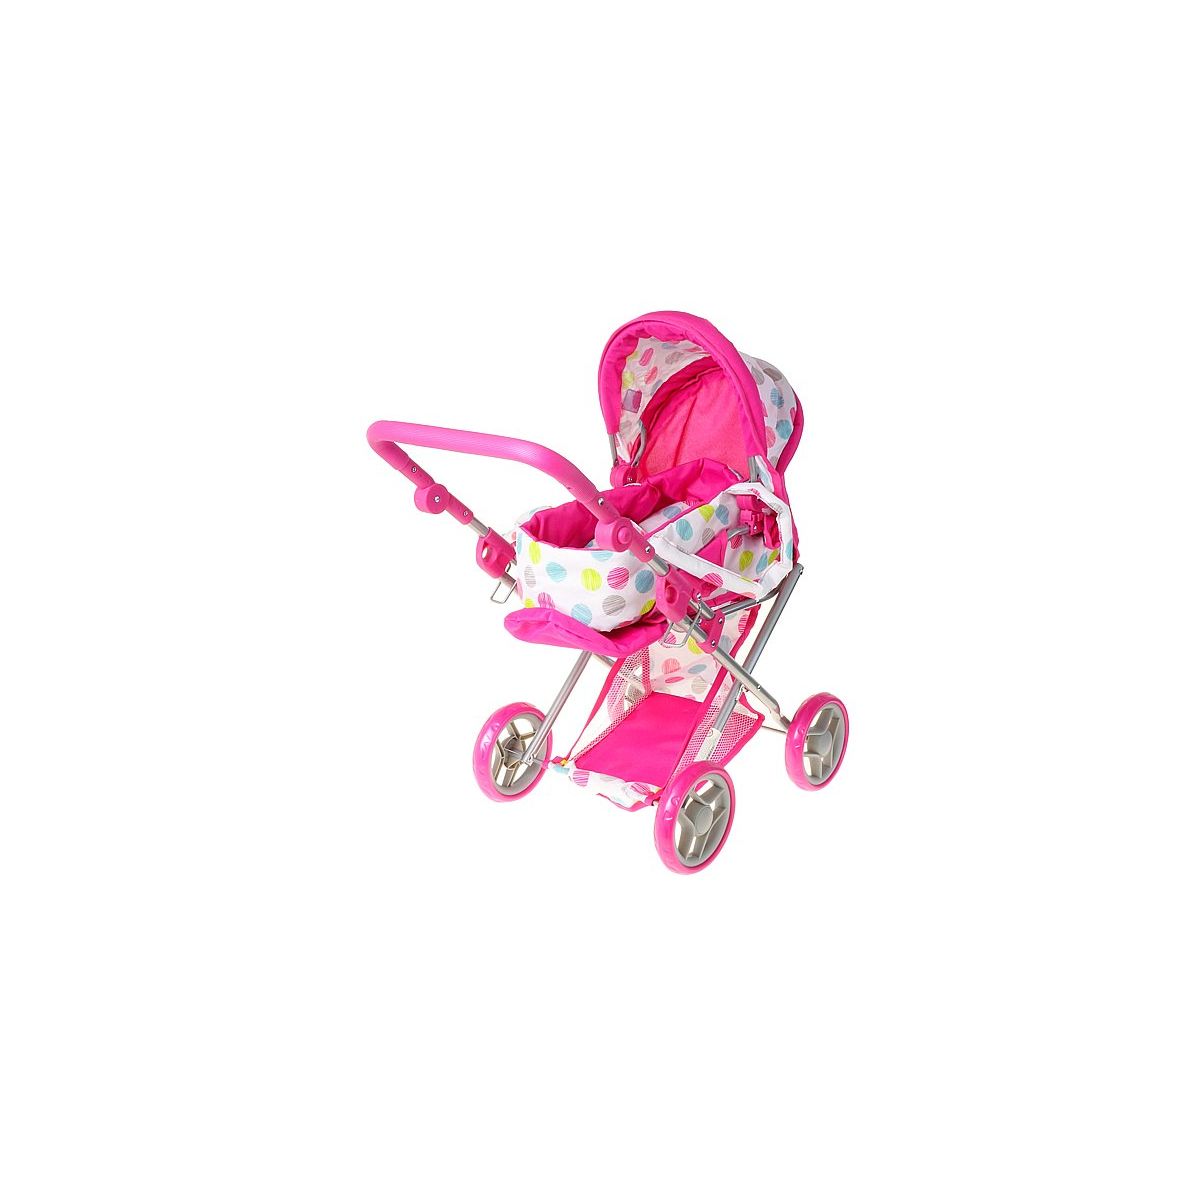 Wózek głęboki dla lalek, profilowana rączka, wyjmowane nosidełko, z koszem, funkcja spacerówki Adar (565746)